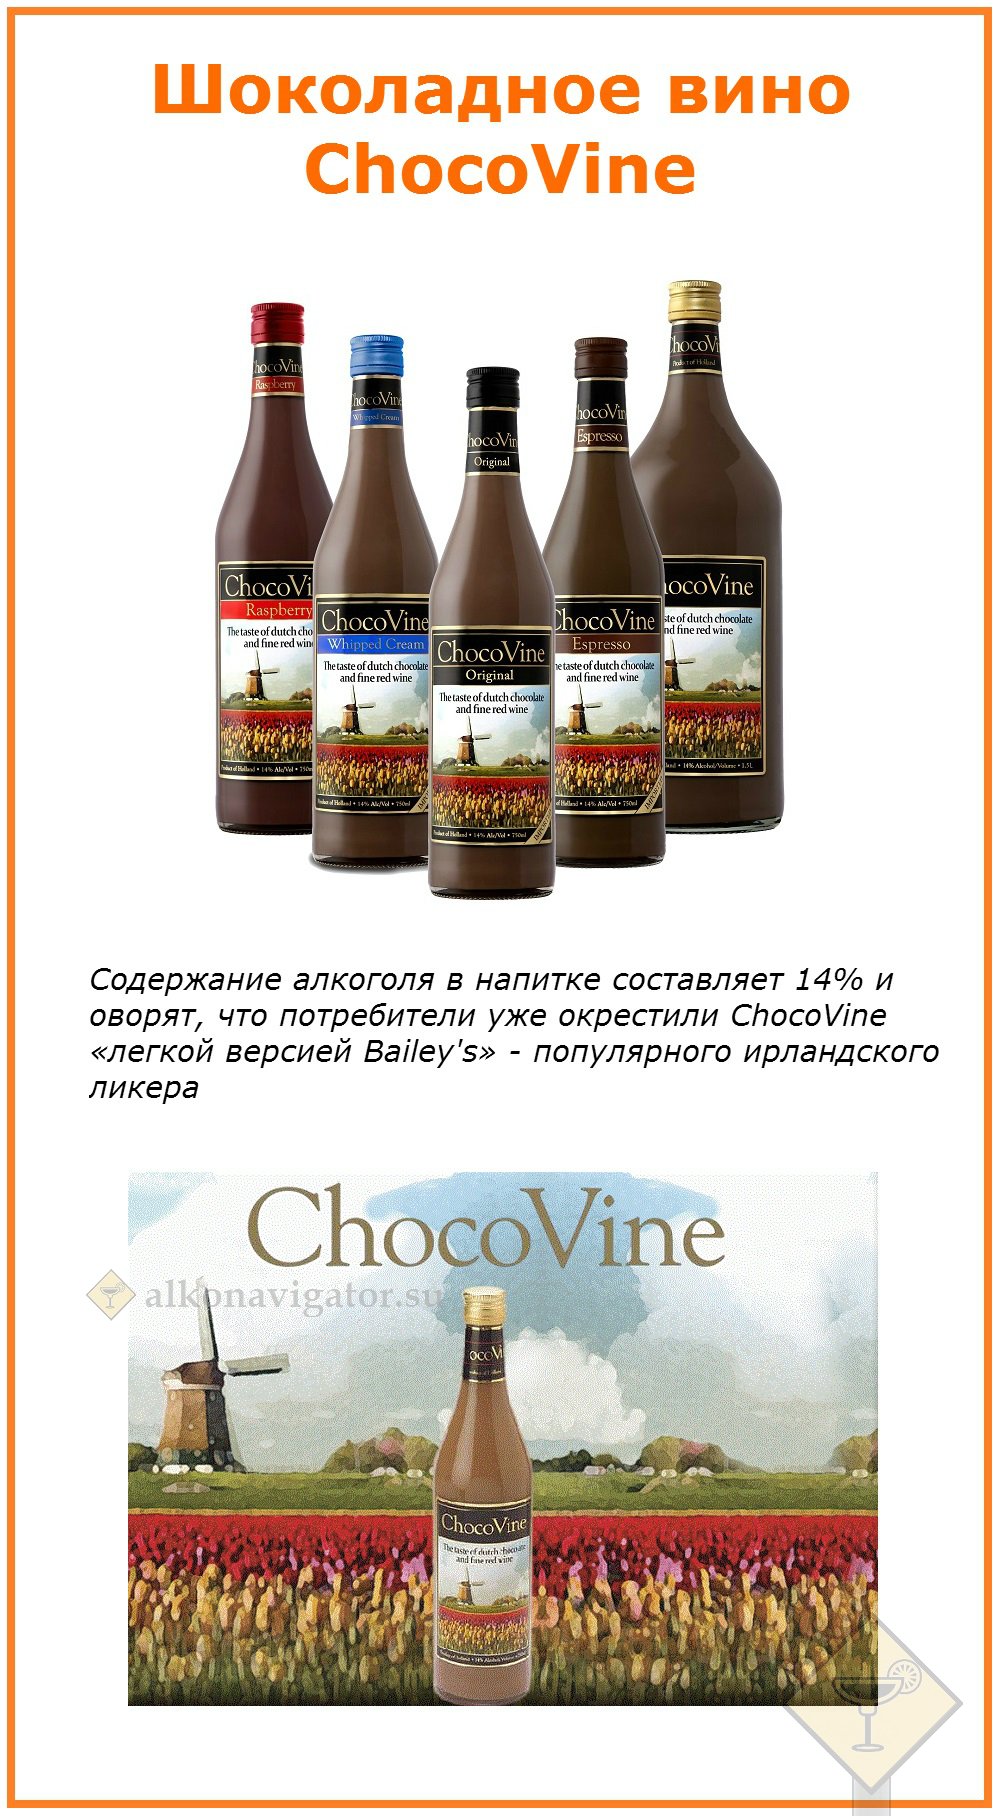 Шоколадное вино ChocoVine